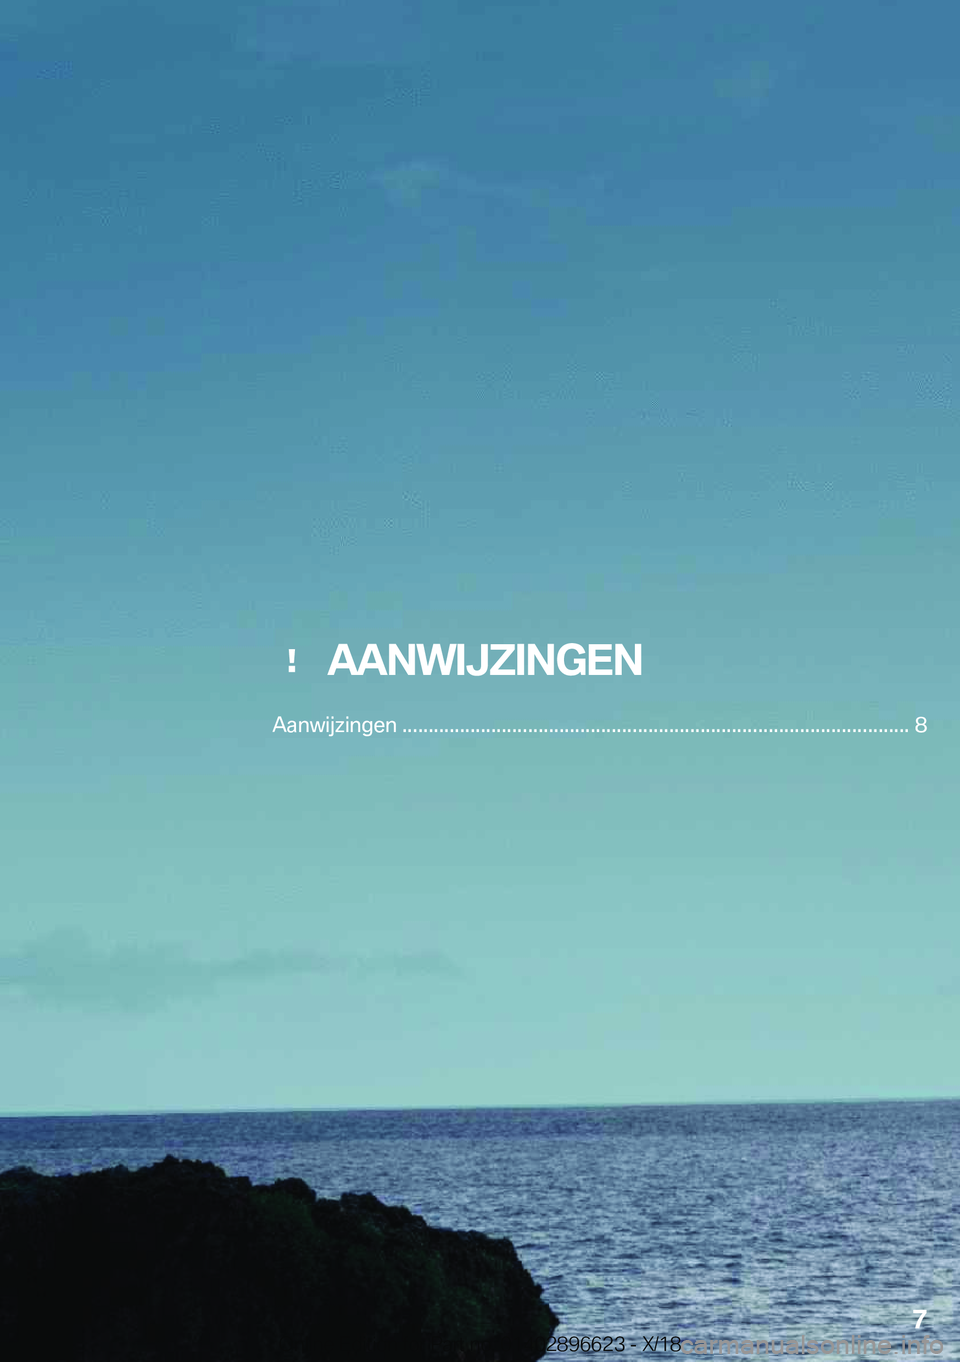 BMW M2 2019  Instructieboekjes (in Dutch) ���A�A�N�W�I�J�;�I�N�G�E�N
�A�a�n�w�i�j�z�i�n�g�e�n��.�.�.�.�.�.�.�.�.�.�.�.�.�.�.�.�.�.�.�.�.�.�.�.�.�.�.�.�.�.�.�.�.�.�.�.�.�.�.�.�.�.�.�.�.�.�.�.�.�.�.�.�.�.�.�.�.�.�.�.�.�.�.�.�.�.�.�.�.�.�.�.�